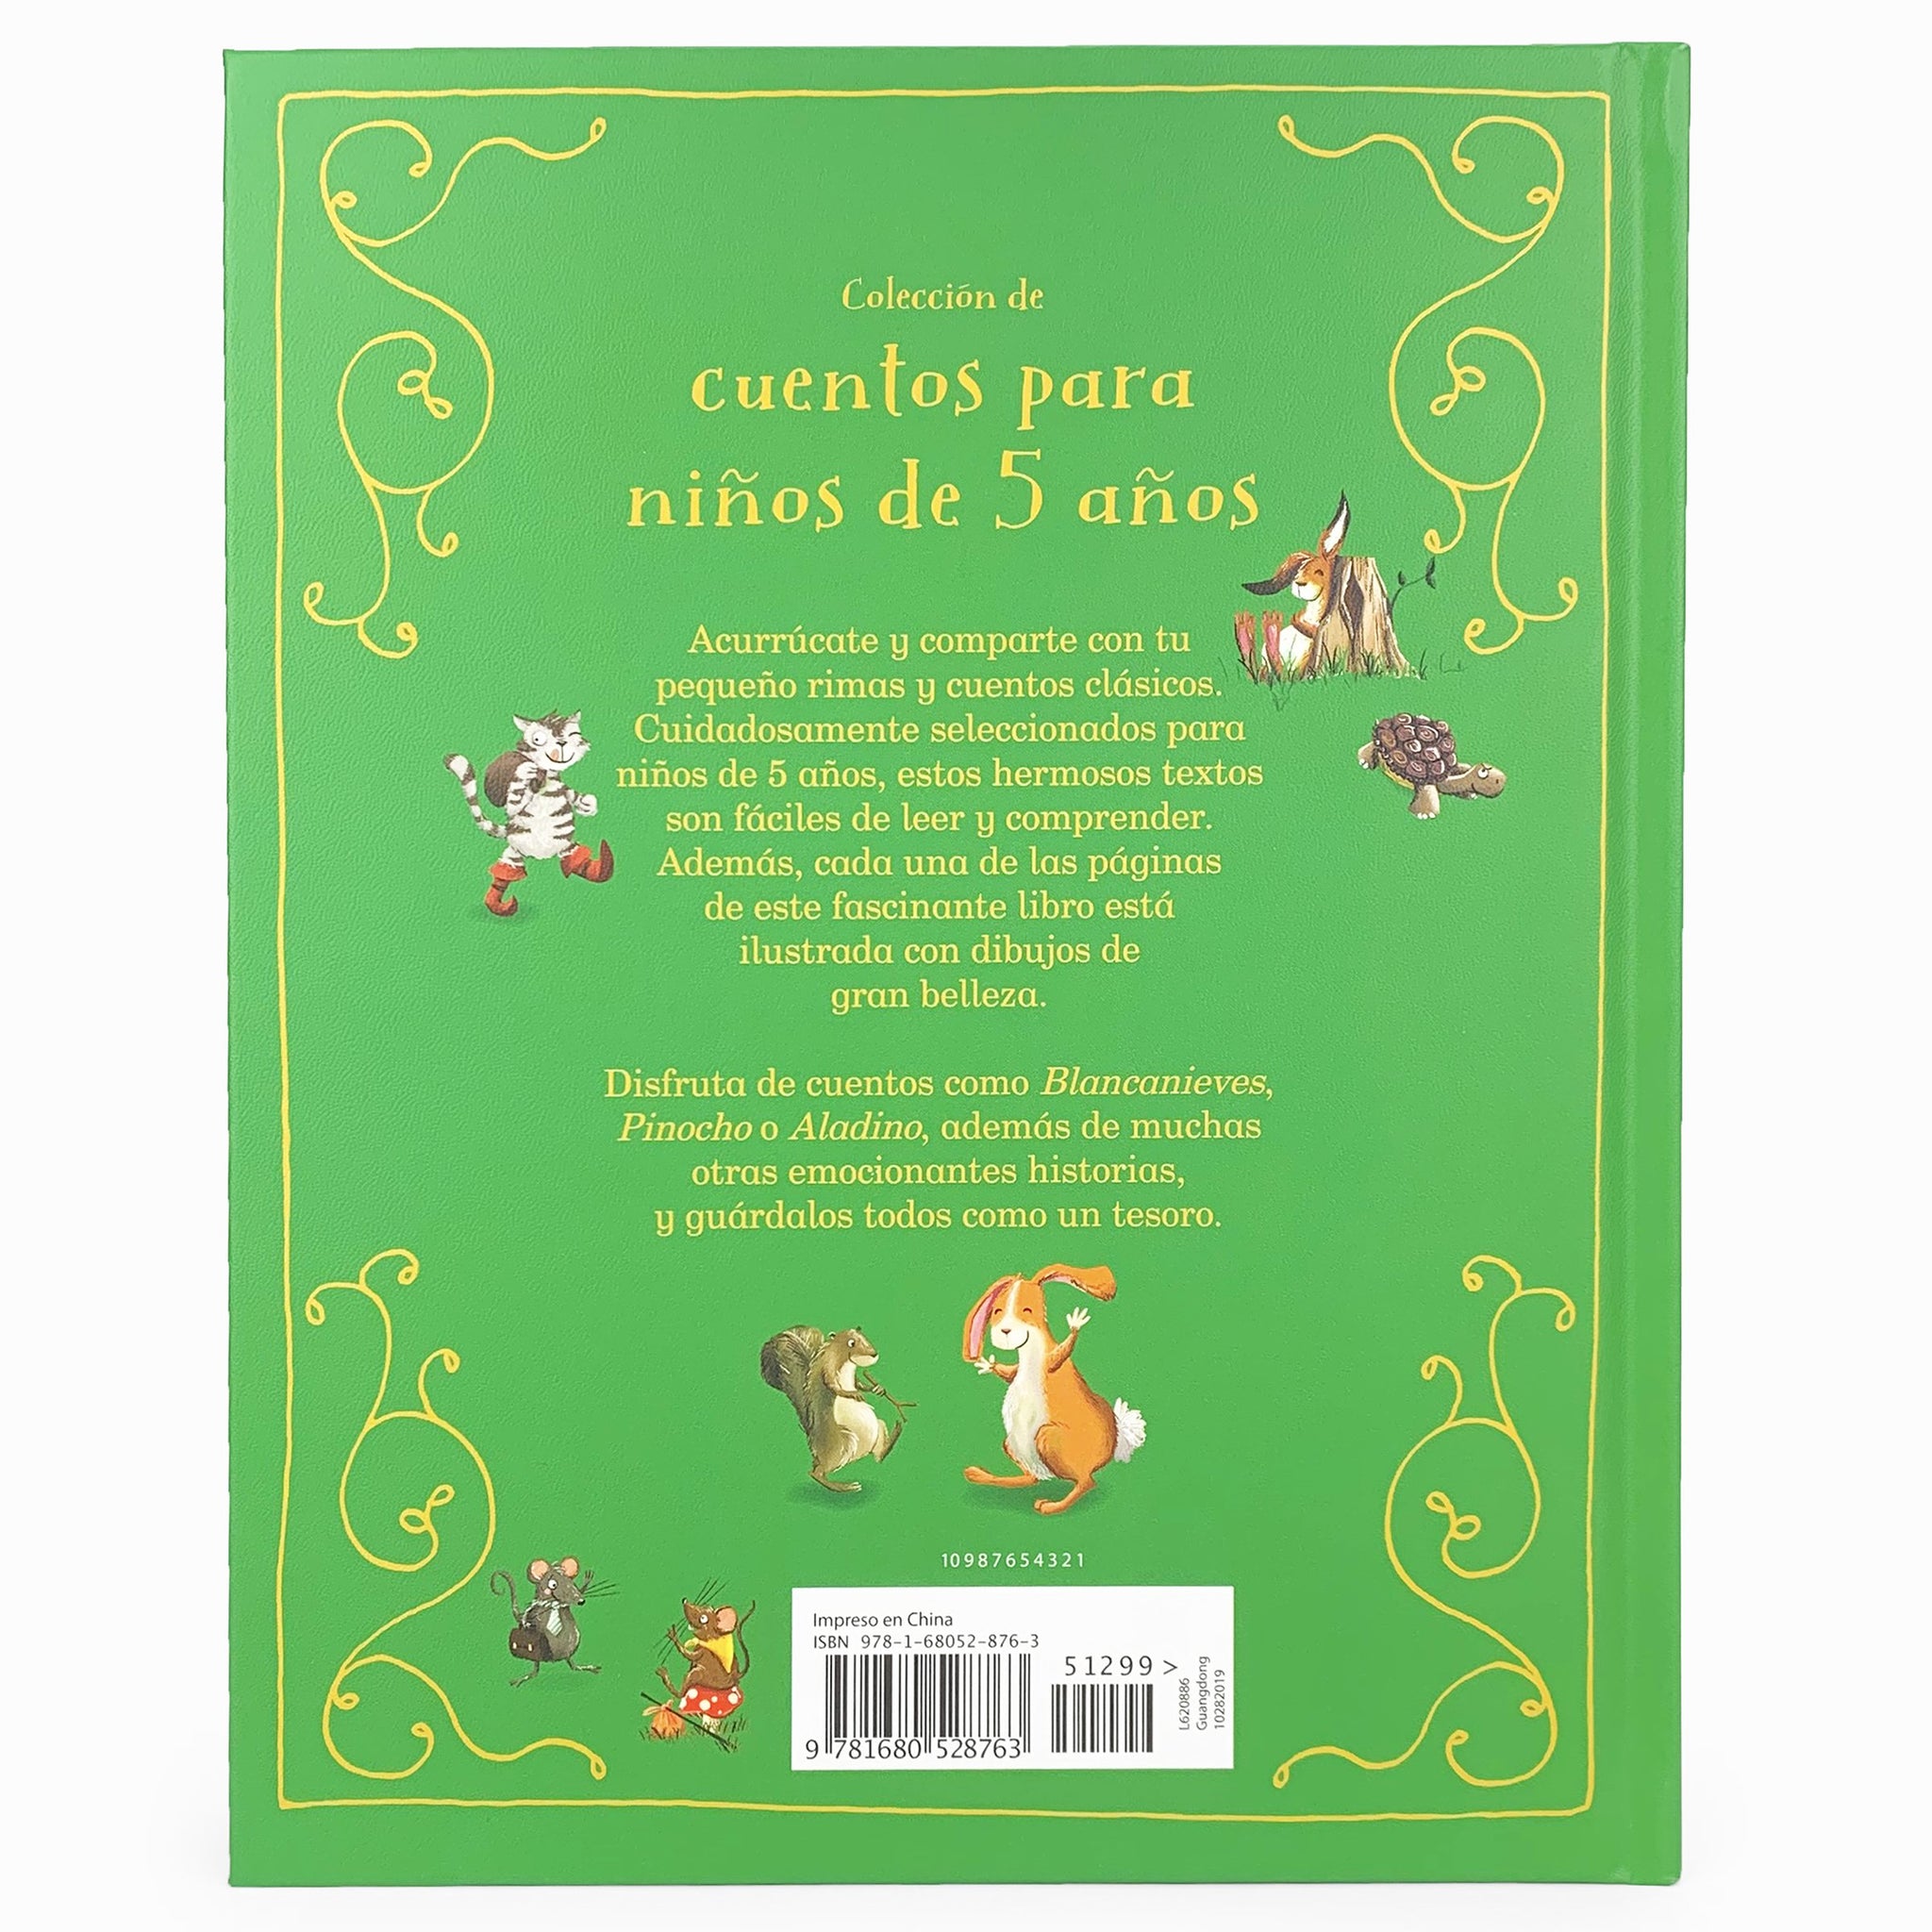 Cuentos Infantiles ebook by Autru Vich - Rakuten Kobo